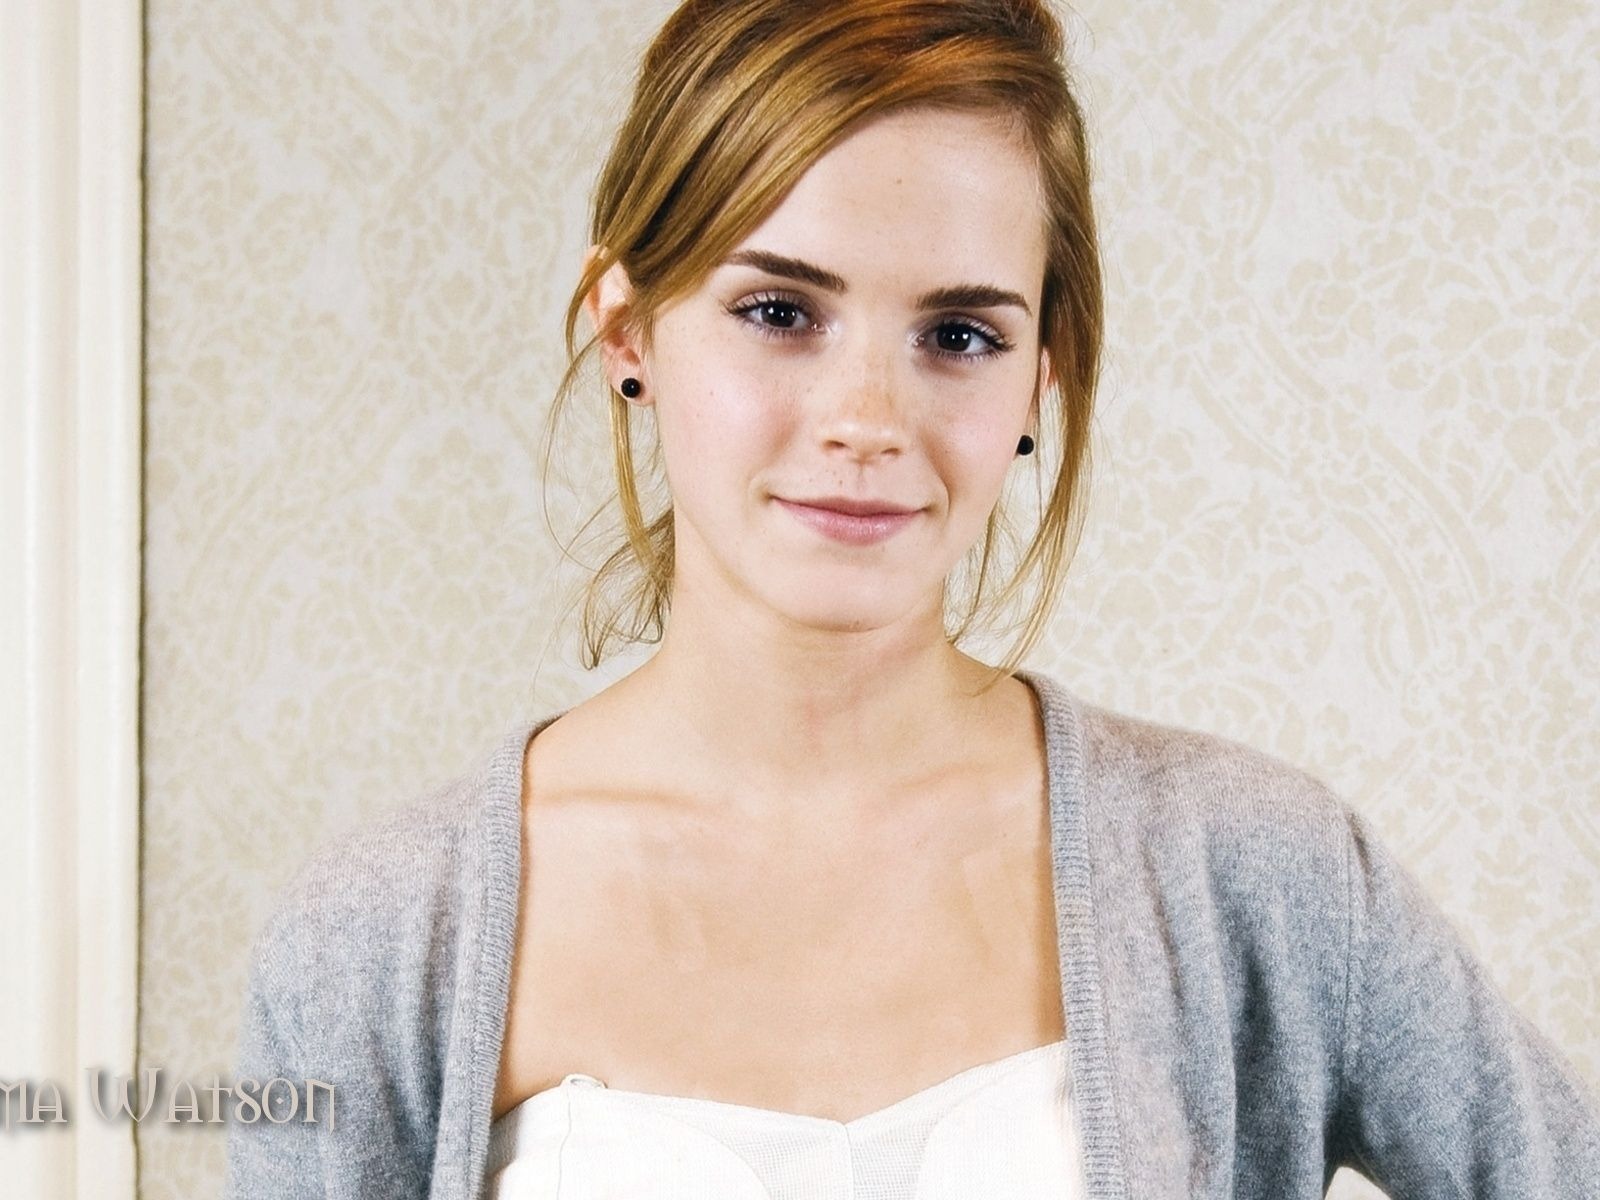 Emma Watson 艾玛·沃特森 美女壁纸33 - 1600x1200